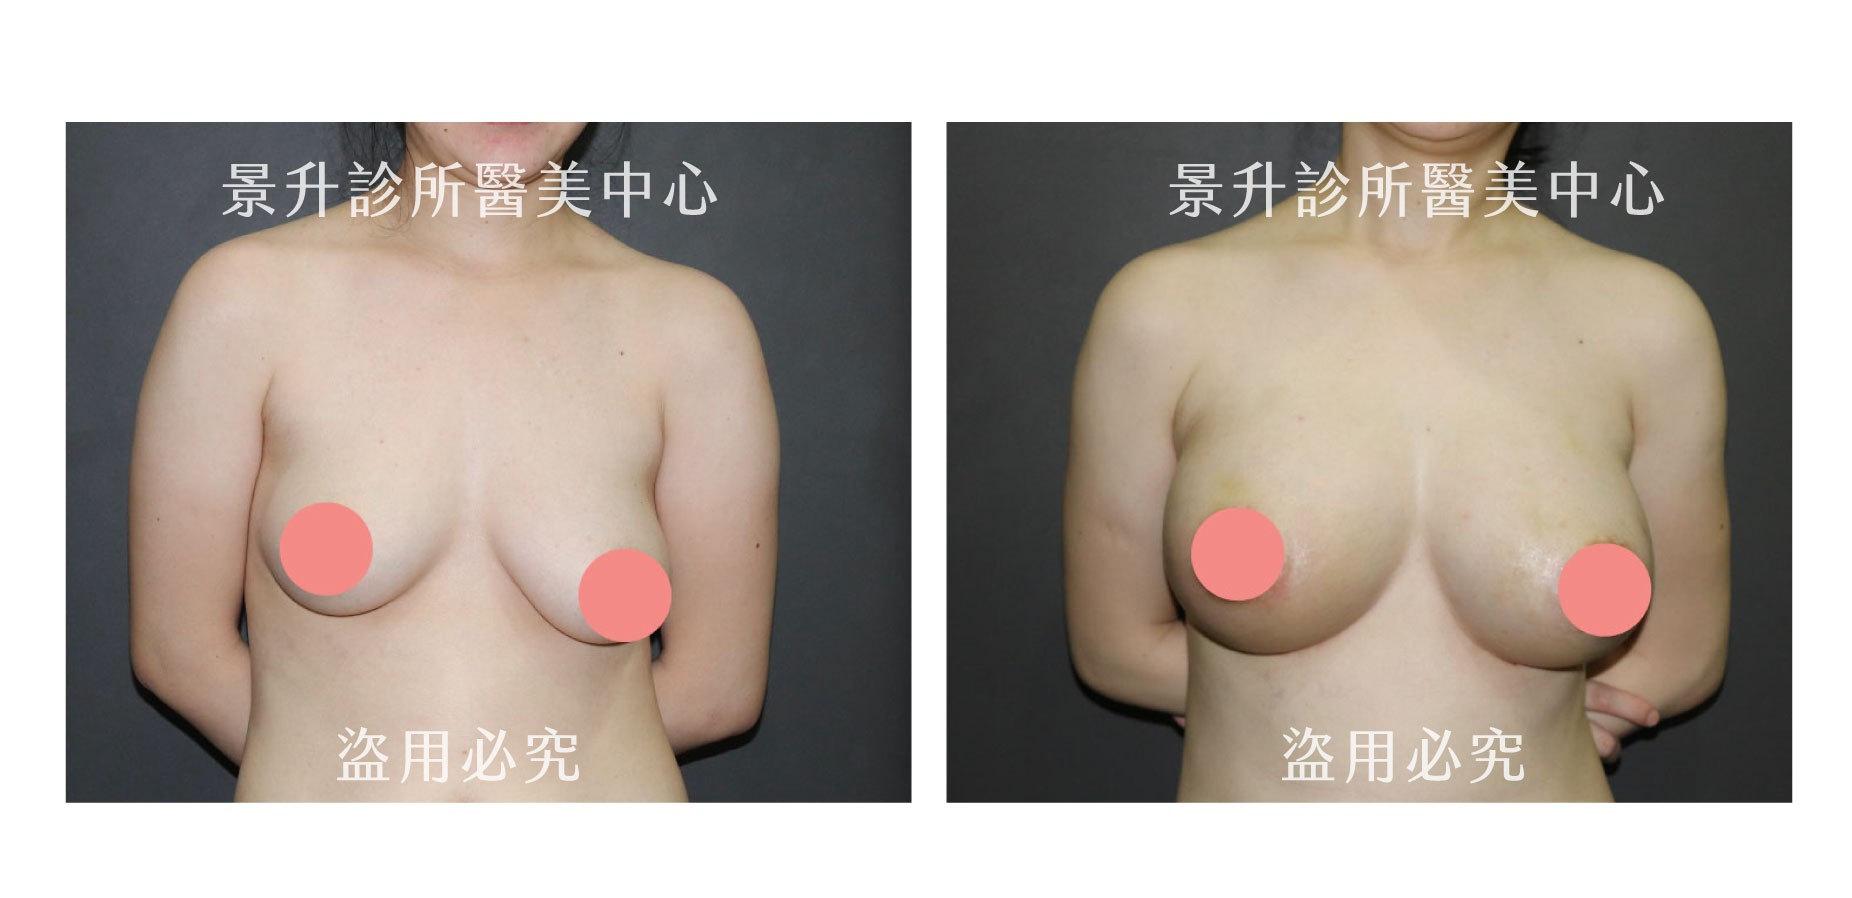 產後乳房下垂與不對稱成功改善案例